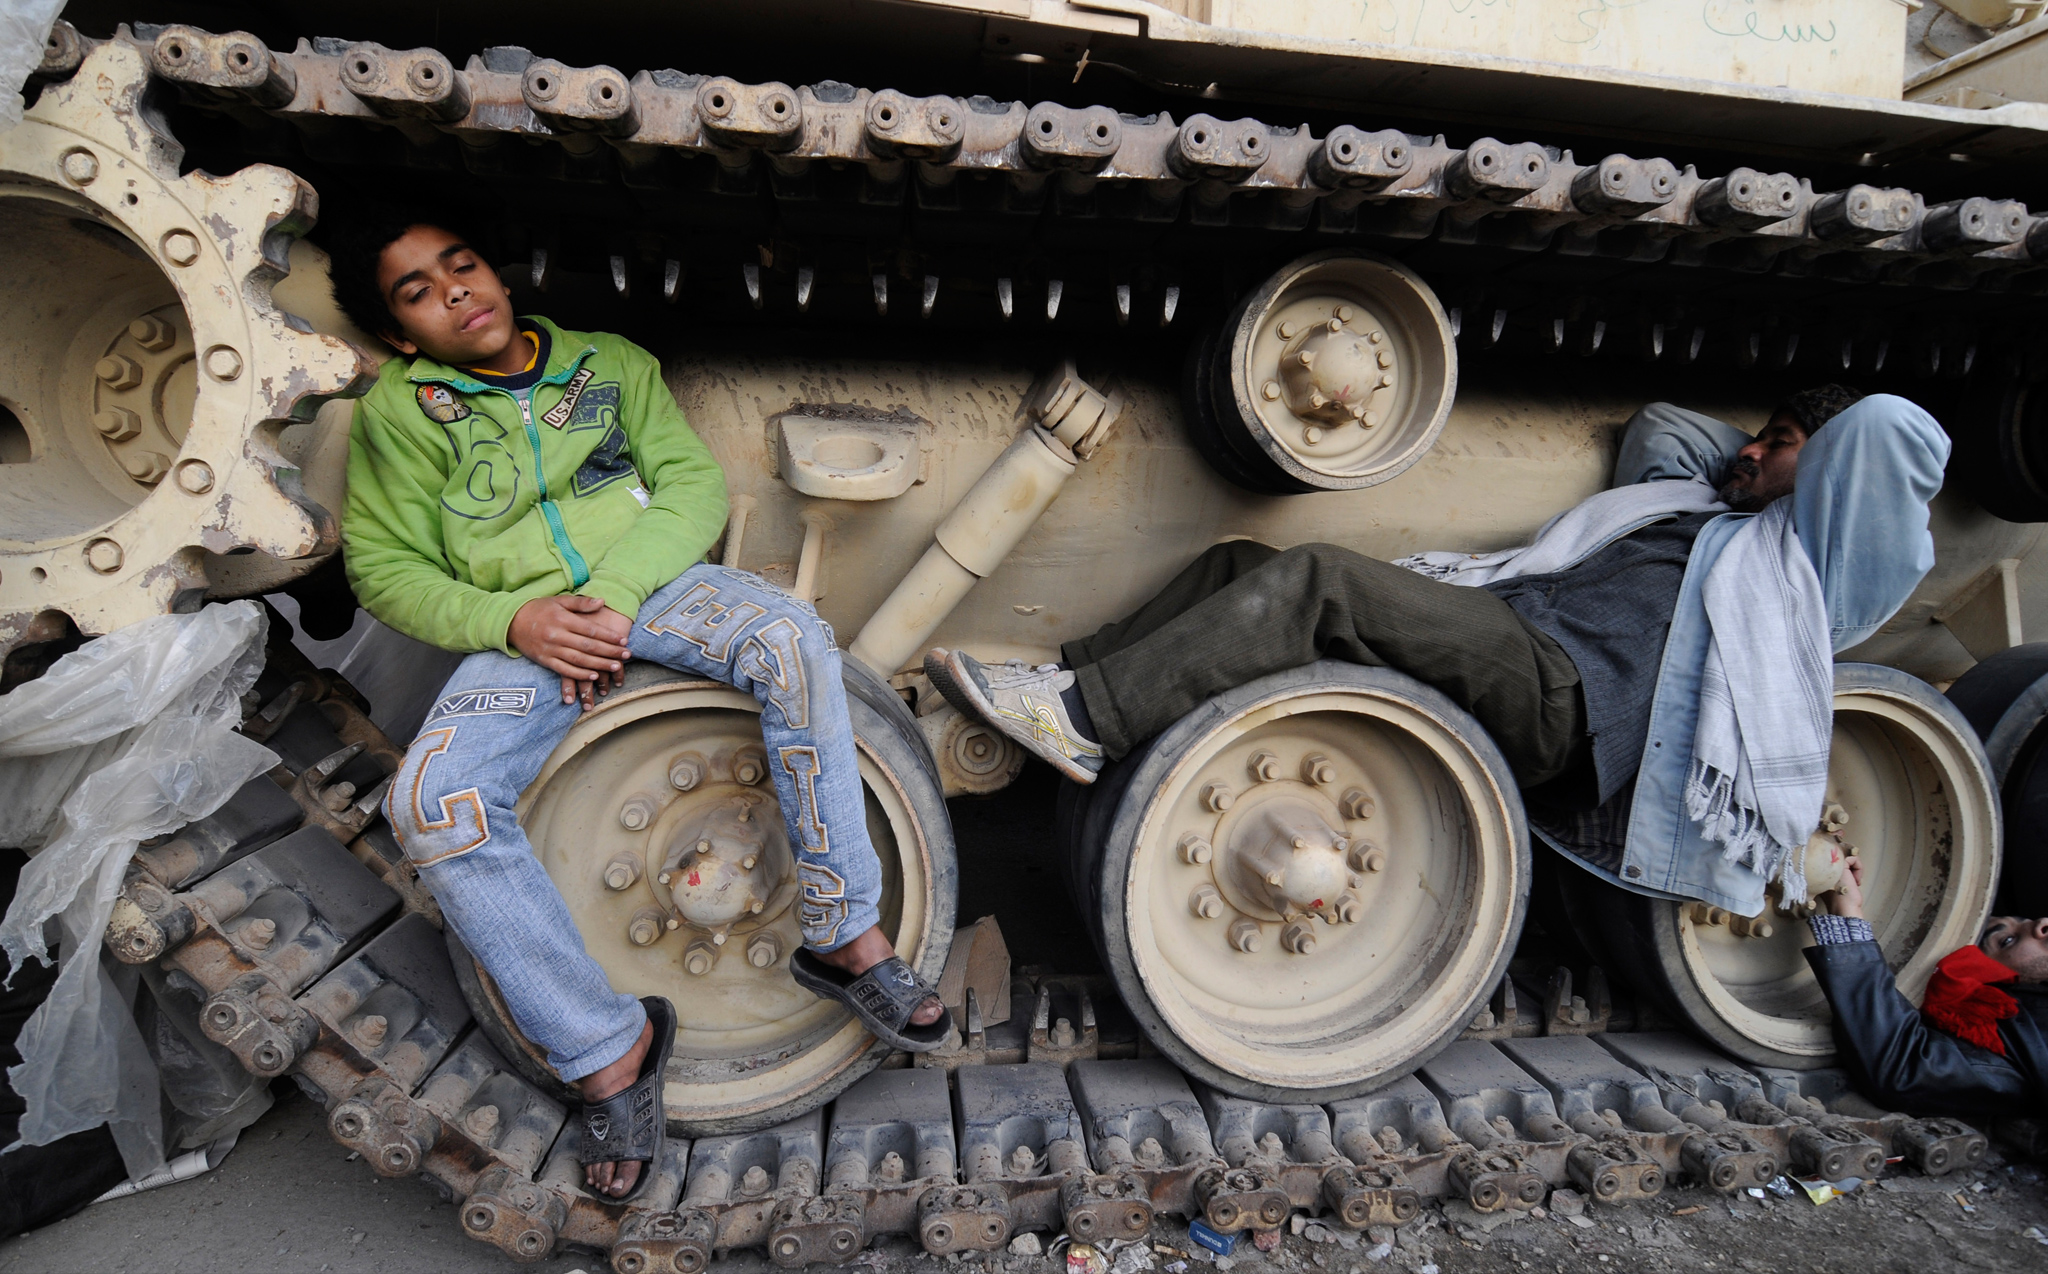 Certains manifestants, qui se préparent à une longue occupation de la place Tahrir, vont jusqu'à faire la sieste <br>sur les chars postés près du Musée du Caire. (Crédit photo : Mehdi Chebil)
